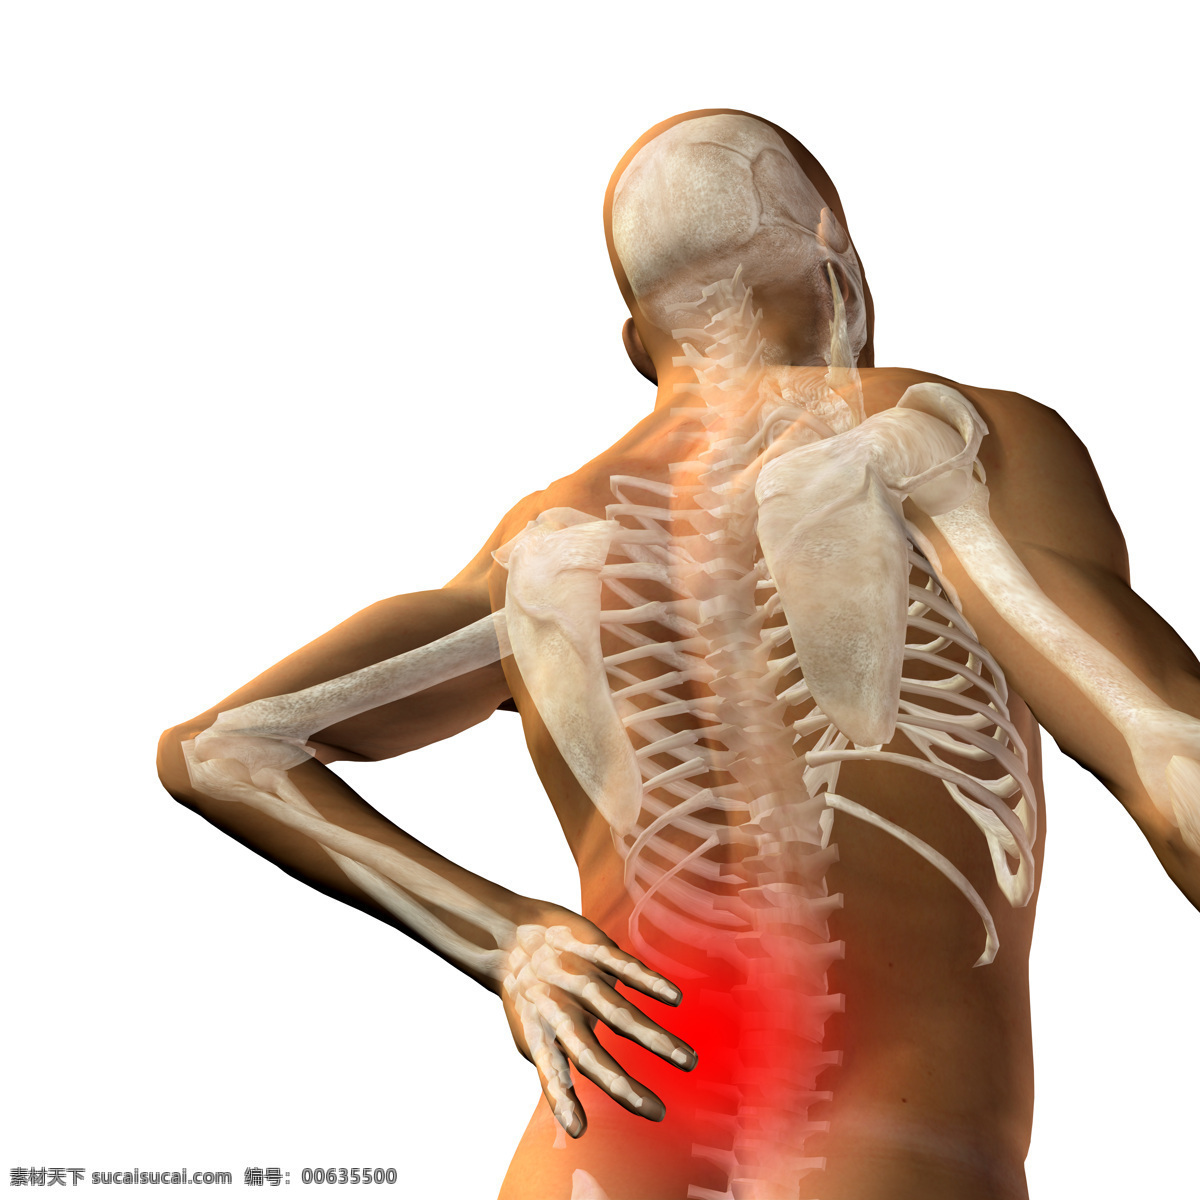 腰椎 疼痛 腰椎疼痛 关节疼 关节痛 关节炎 人体关节 骨骼 人体器官图 人物图片 医疗护理 现代科技